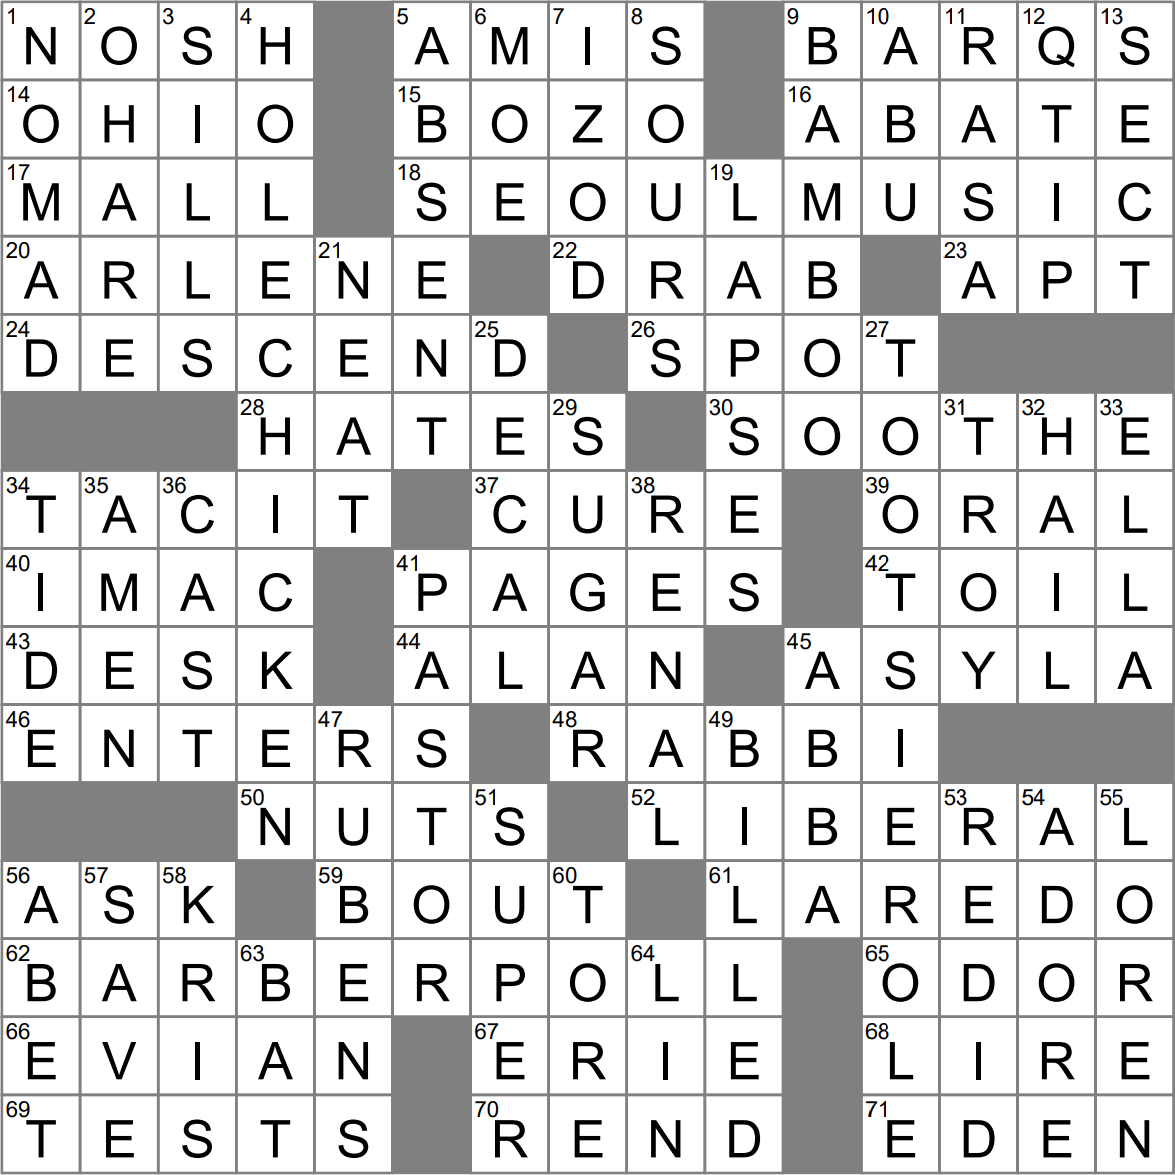 LA Times Crossword 15 Dec 22 Thursday LAXCrossword com